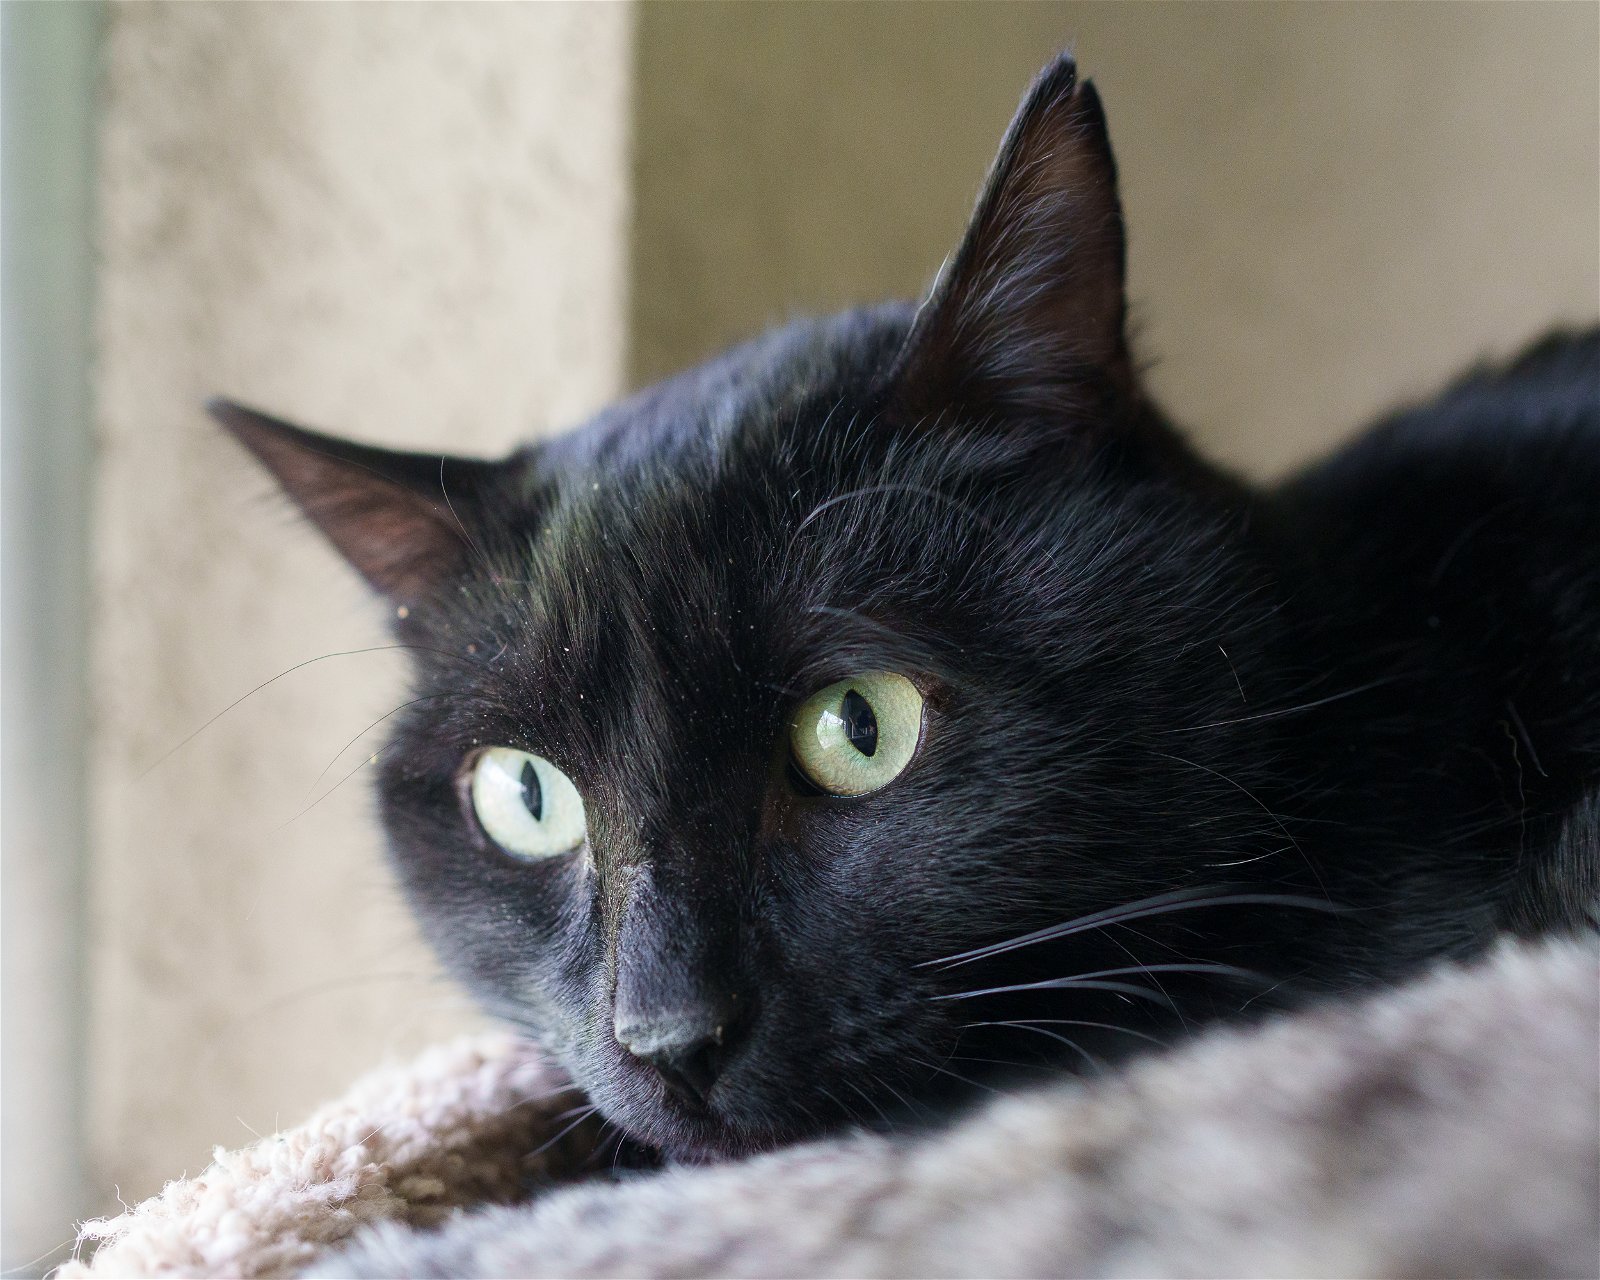 adoptable Cat in Boise, ID named Evan